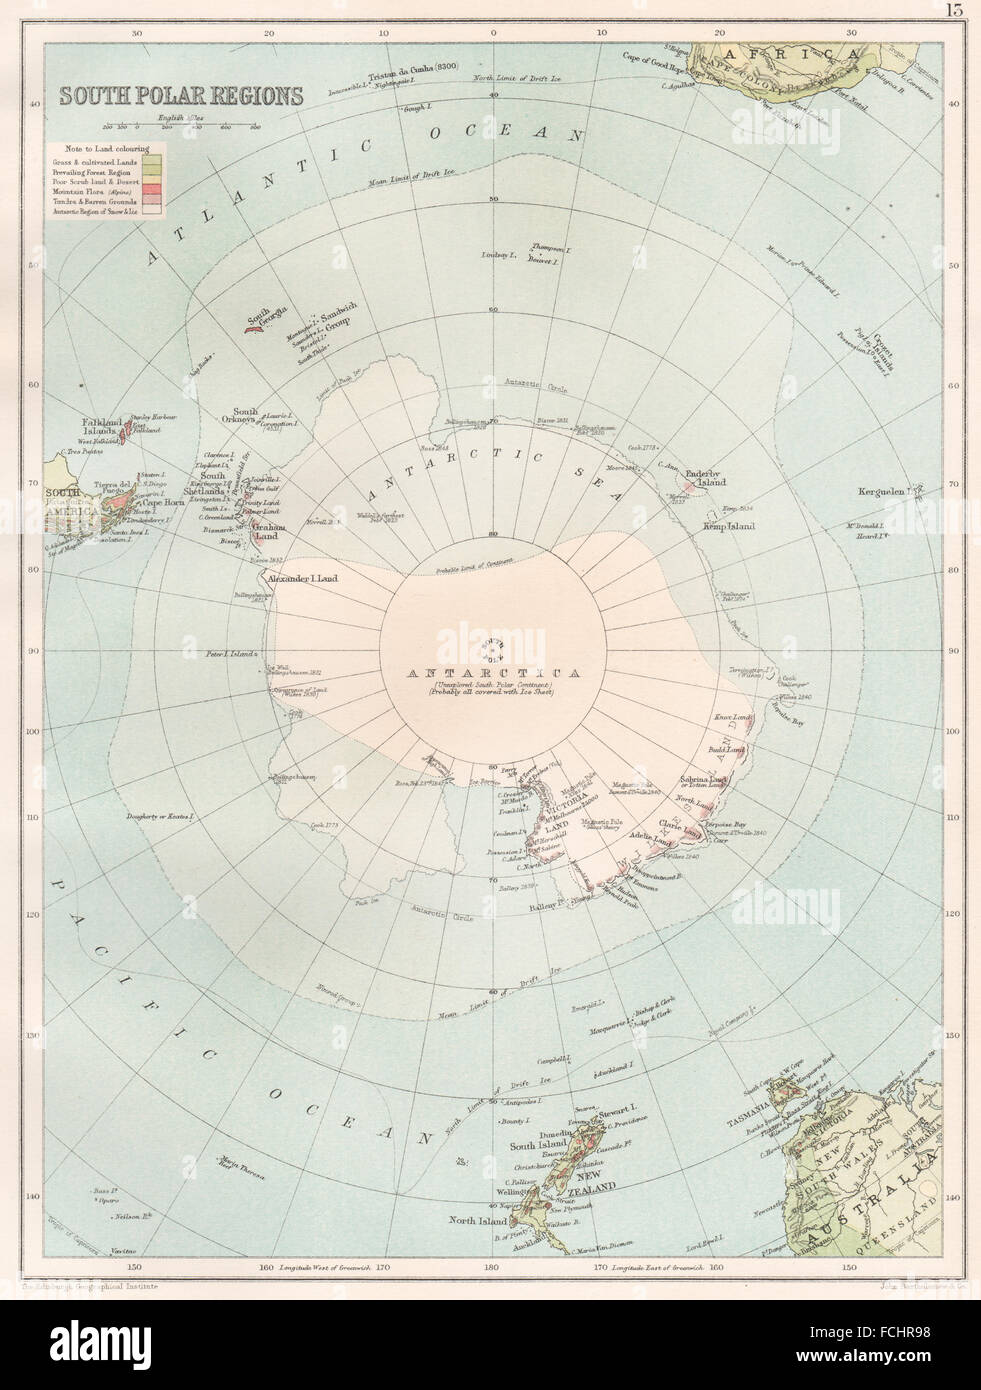 Polo antartico immagini e fotografie stock ad alta risoluzione - Alamy